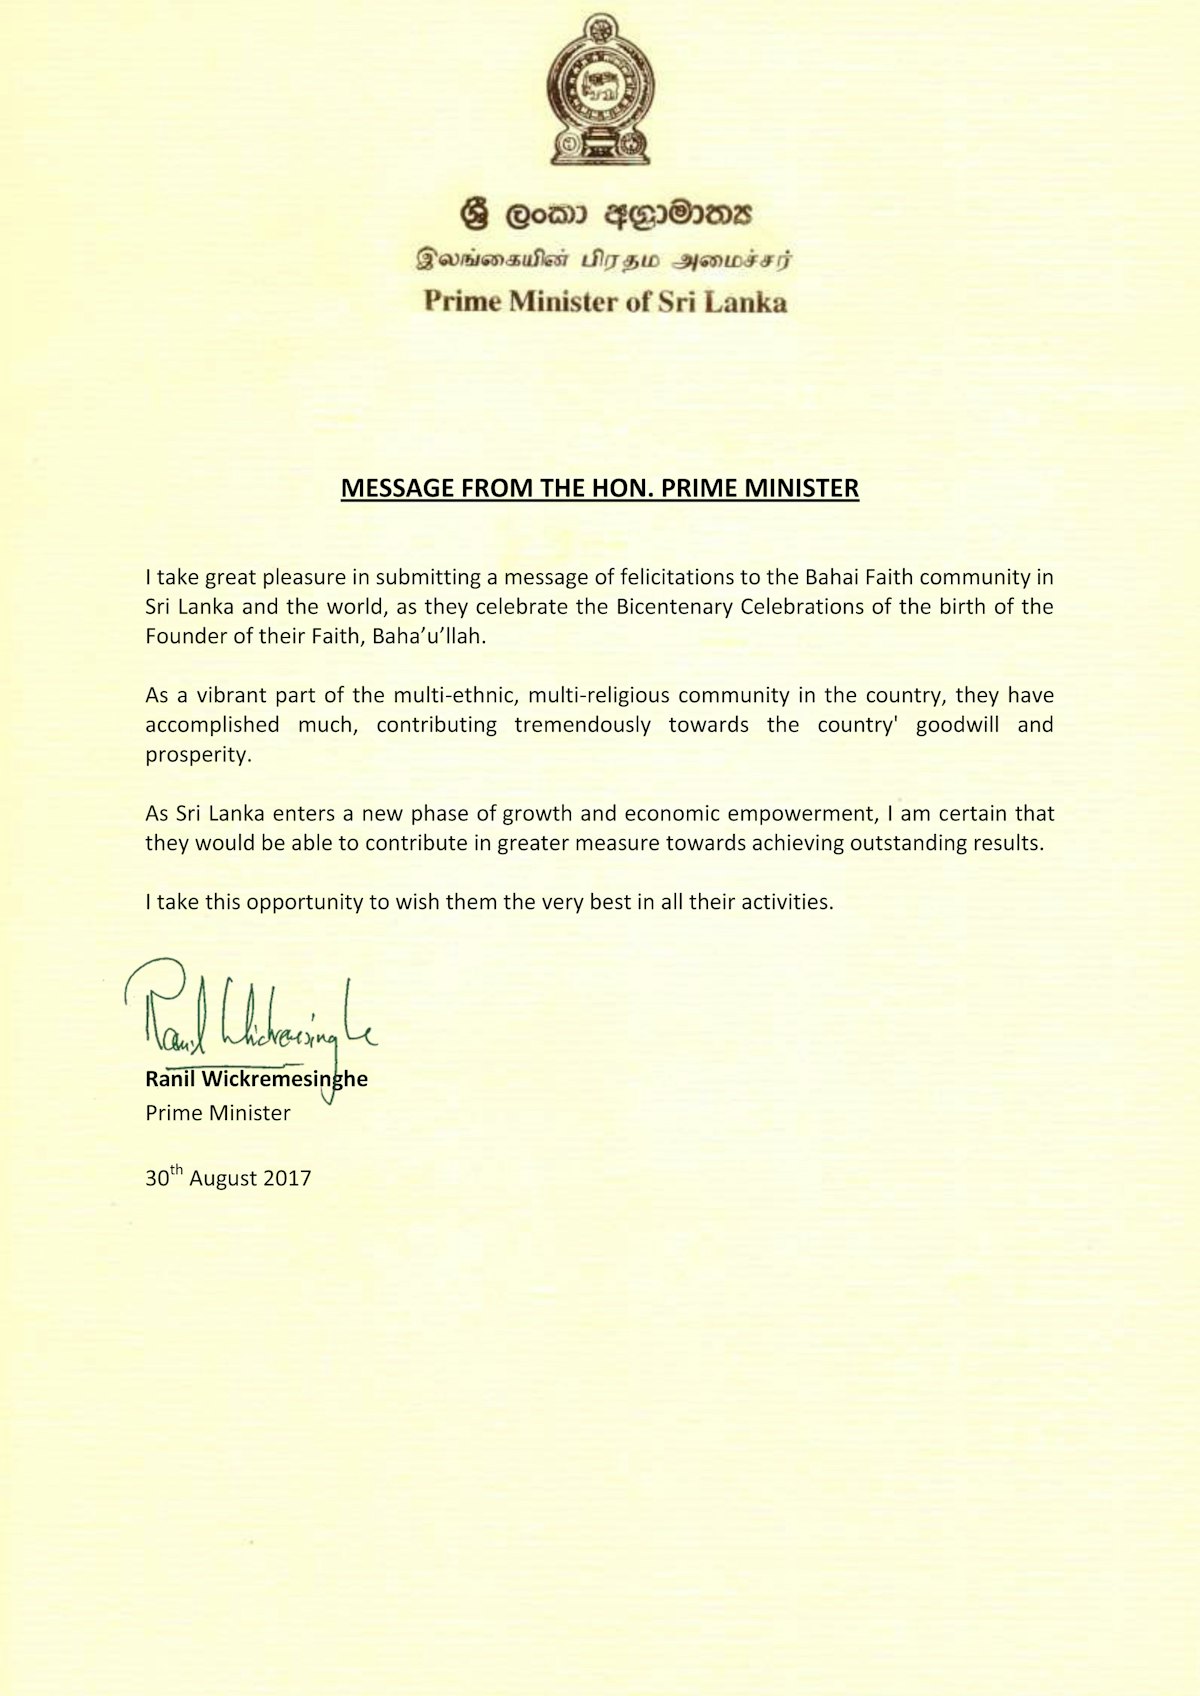 Dans un message du 30 août 2017 aux bahá’ís de Sri Lanka, le Premier ministre Ranil Wickremesinghe offre ses salutations à la communauté bahá’íe et lui rend hommage pour « son apport considérable aux bonnes relations entre citoyens et à la prospérité du pays».